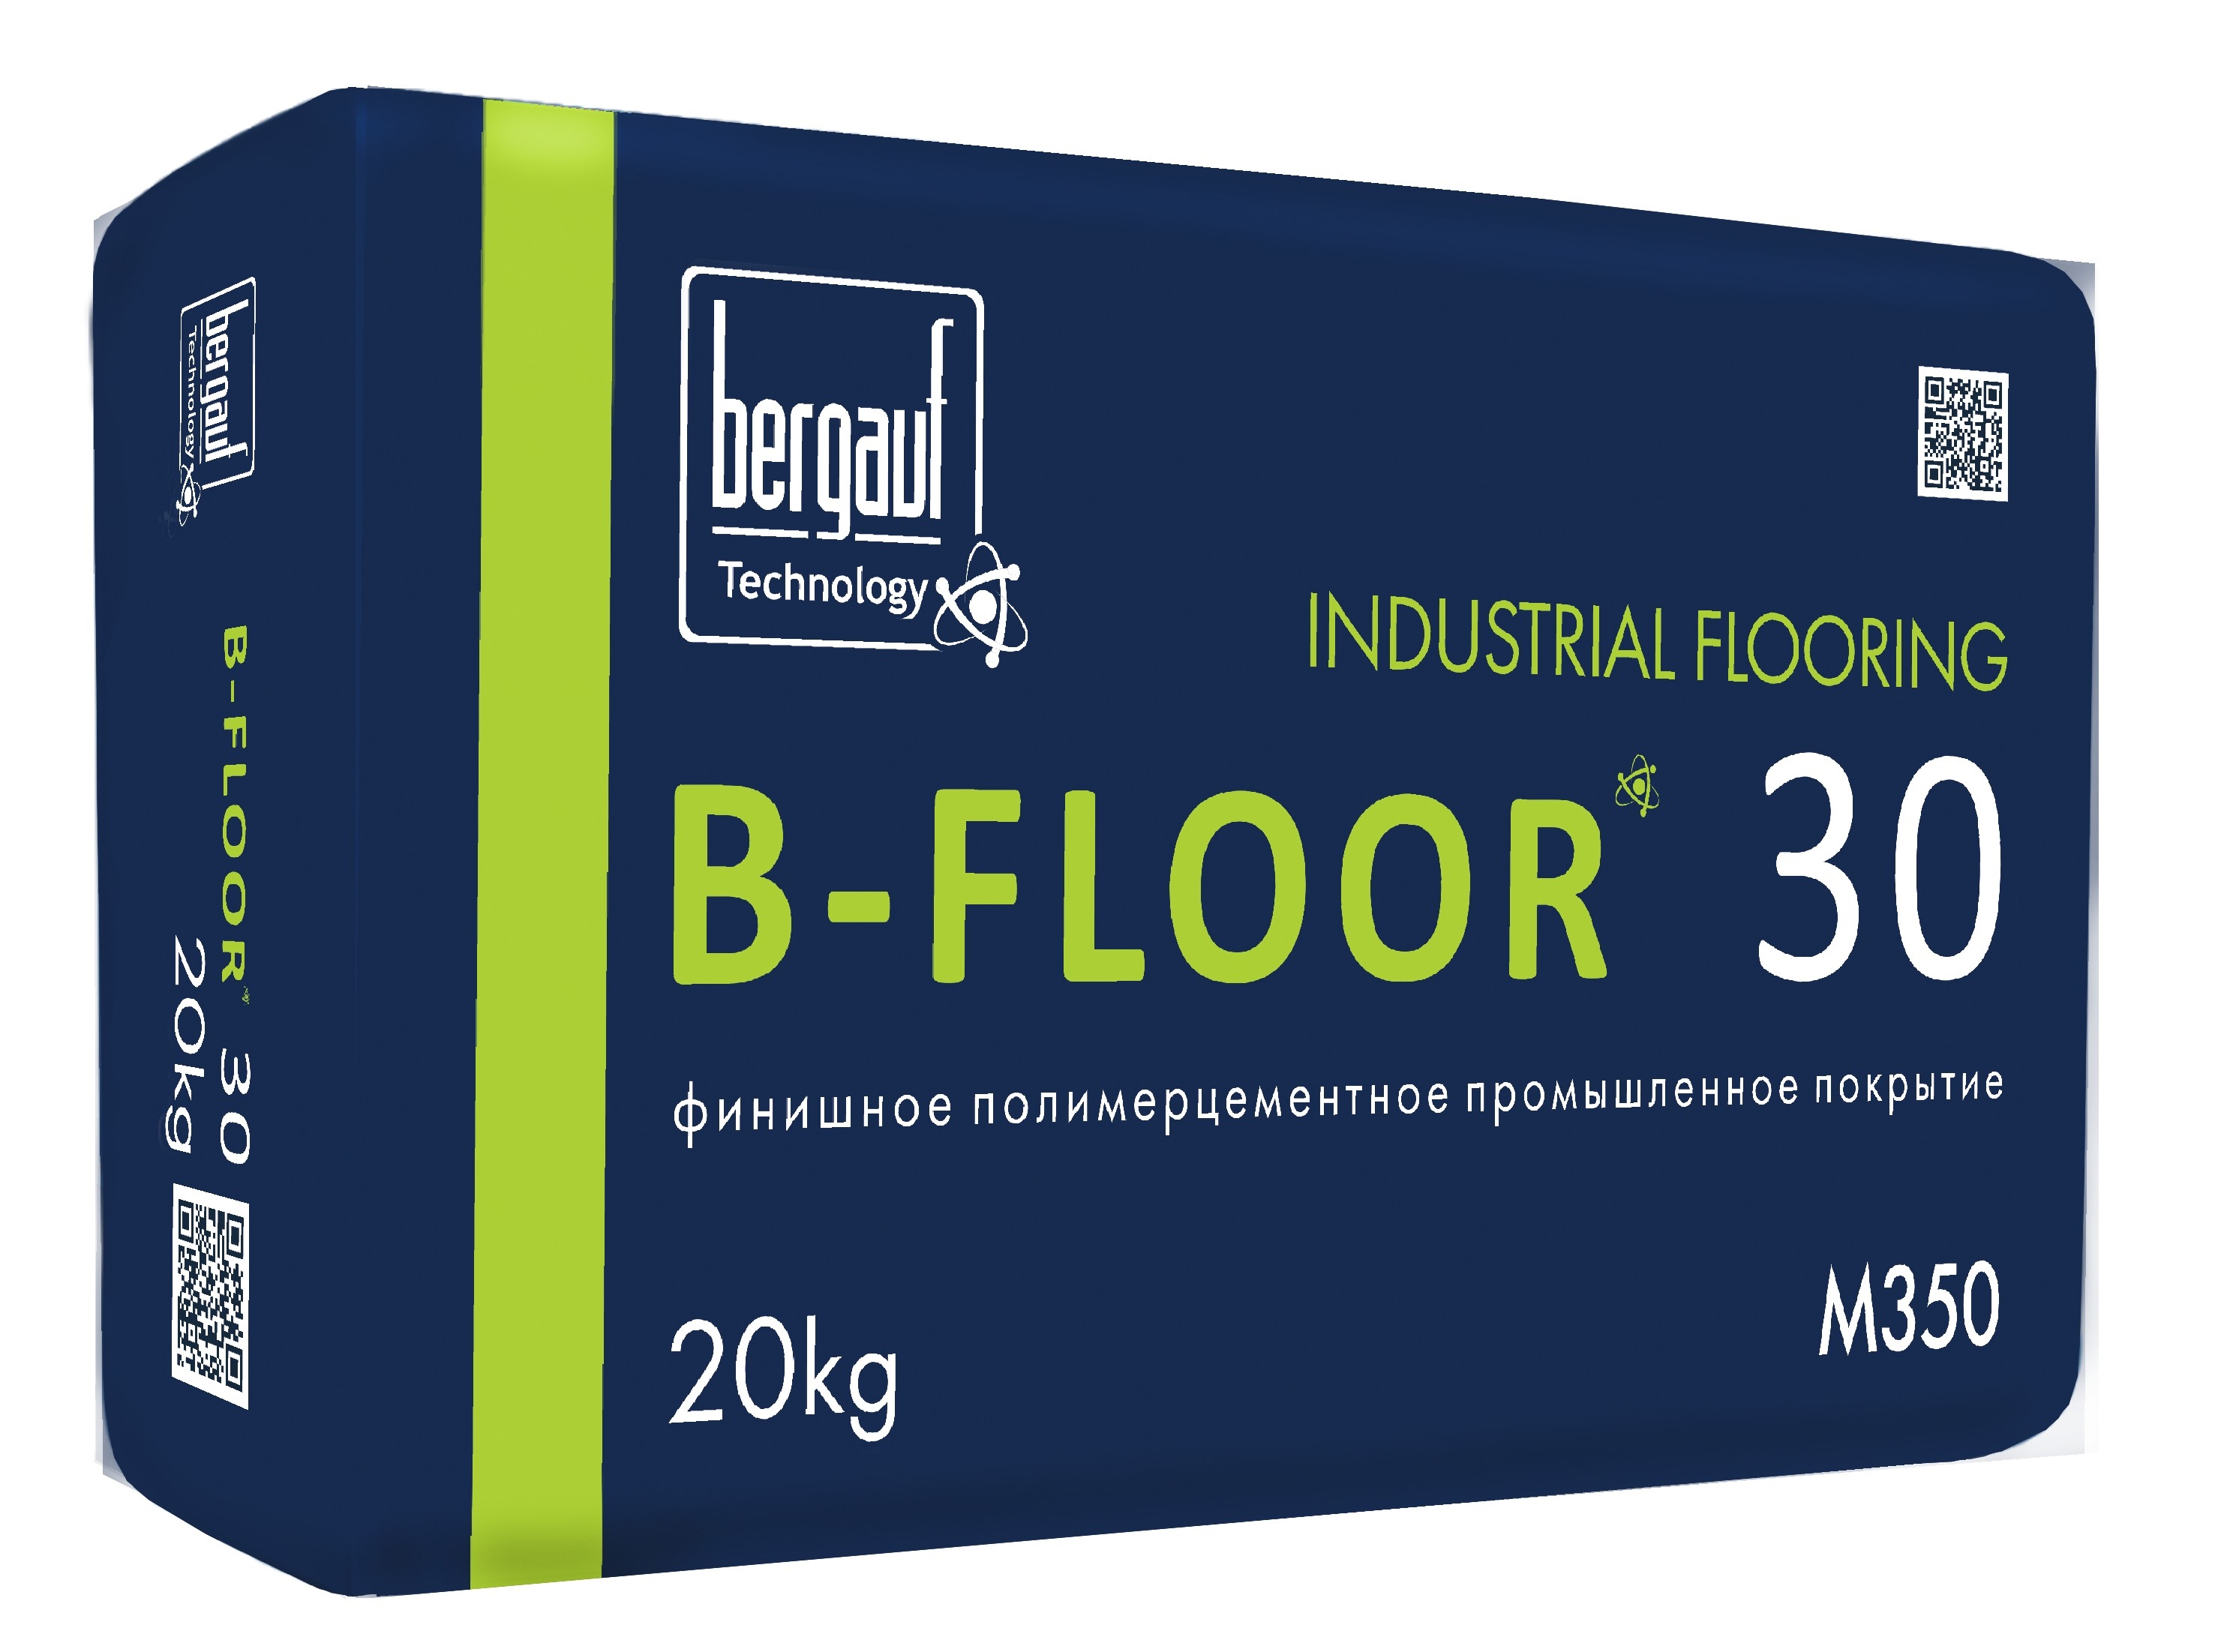 B-Floor 30